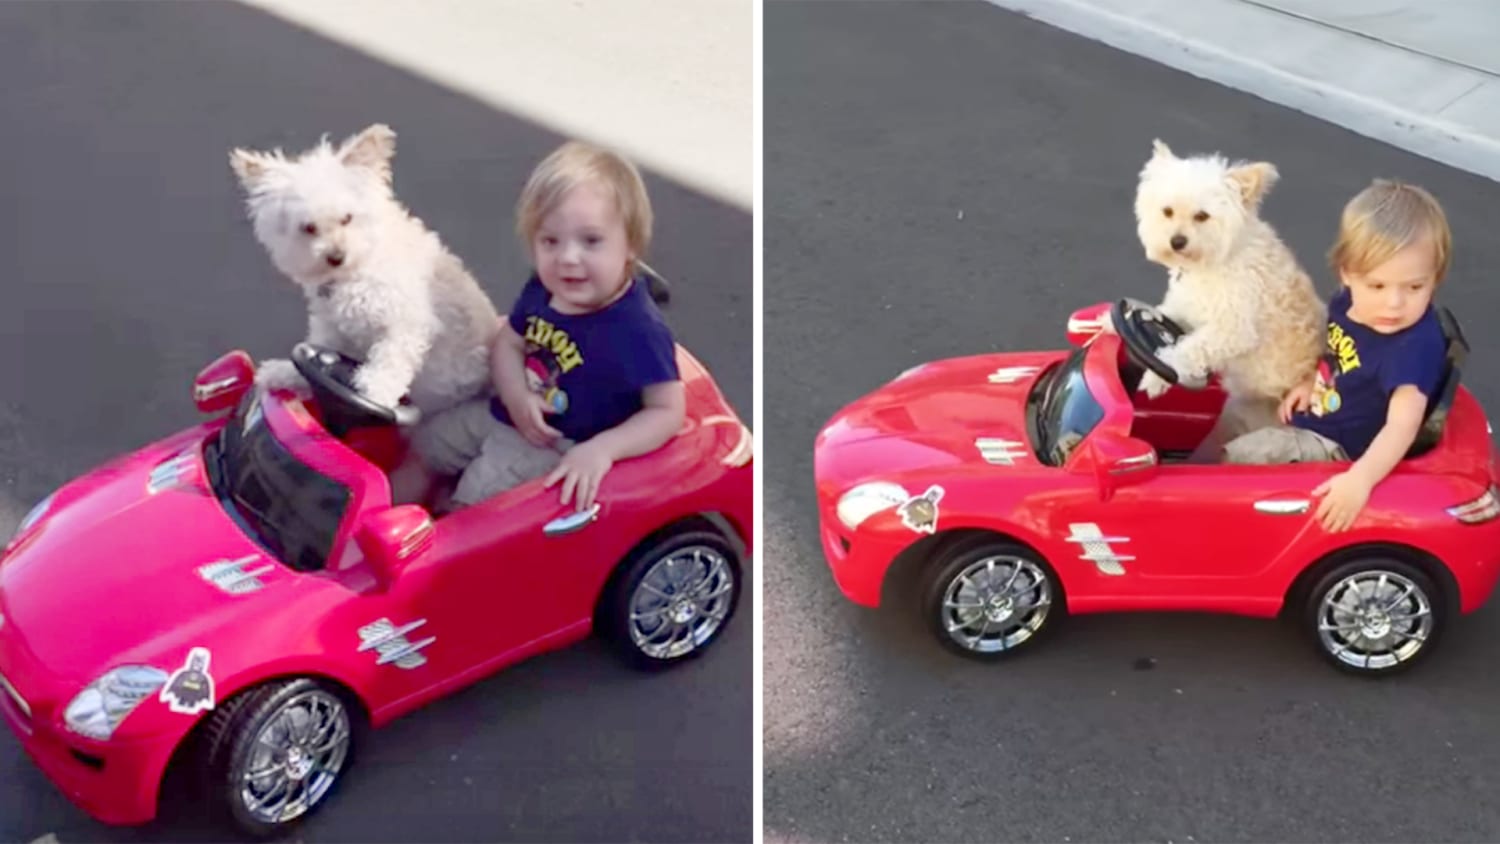 Dog 'drives' little boy in toy car, breaks speed limit for cuteness